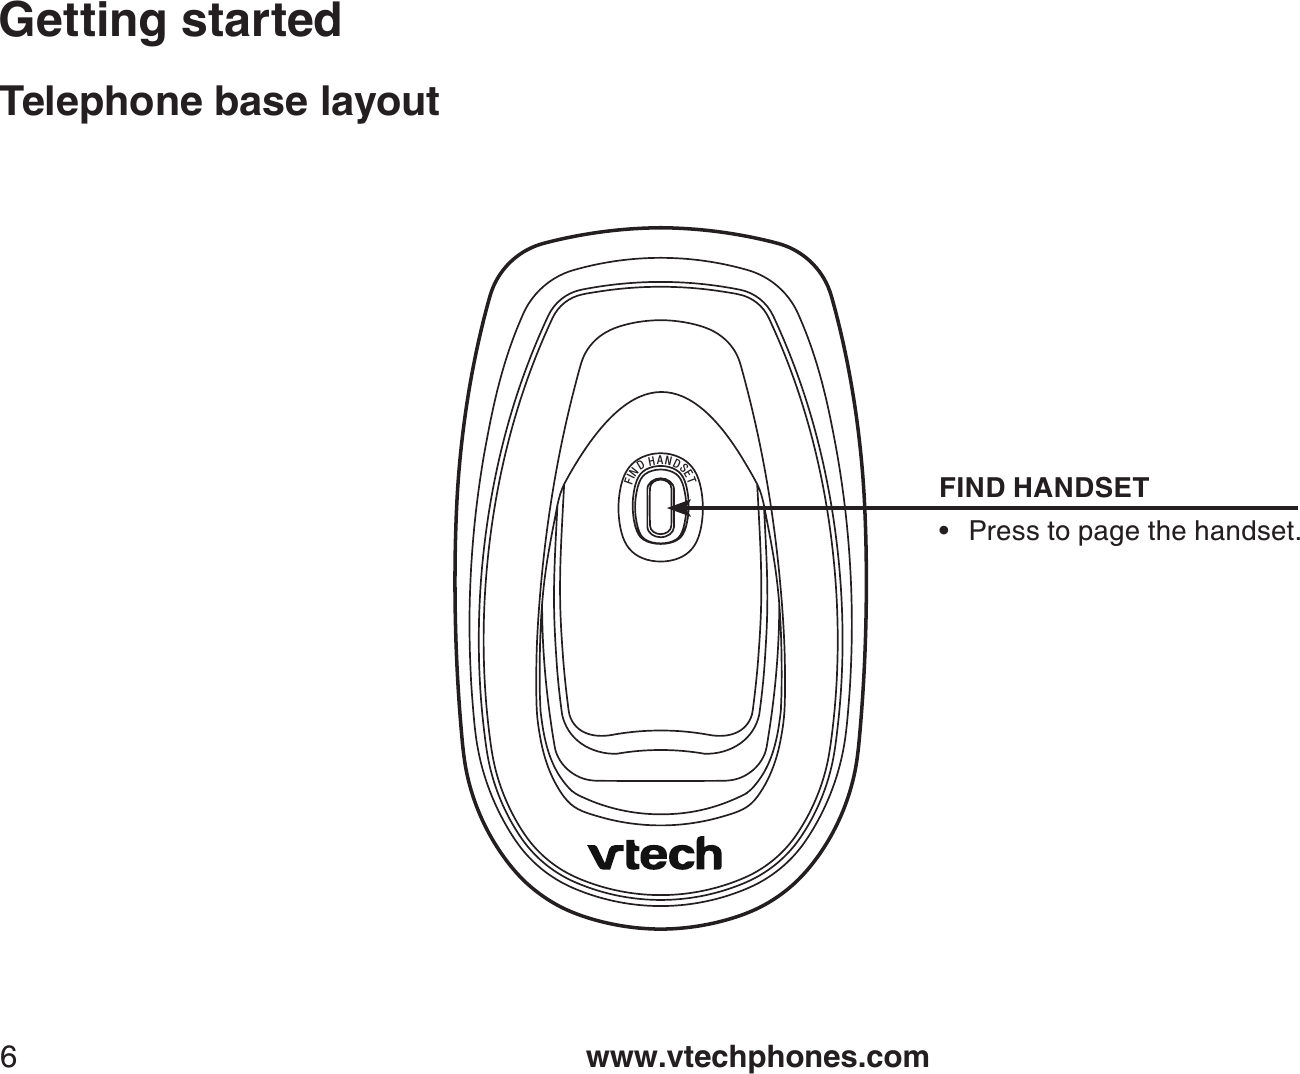 www.vtechphones.com6Getting startedTelephone base layoutFINDHANDSETFIND HANDSETPress to page the handset.•